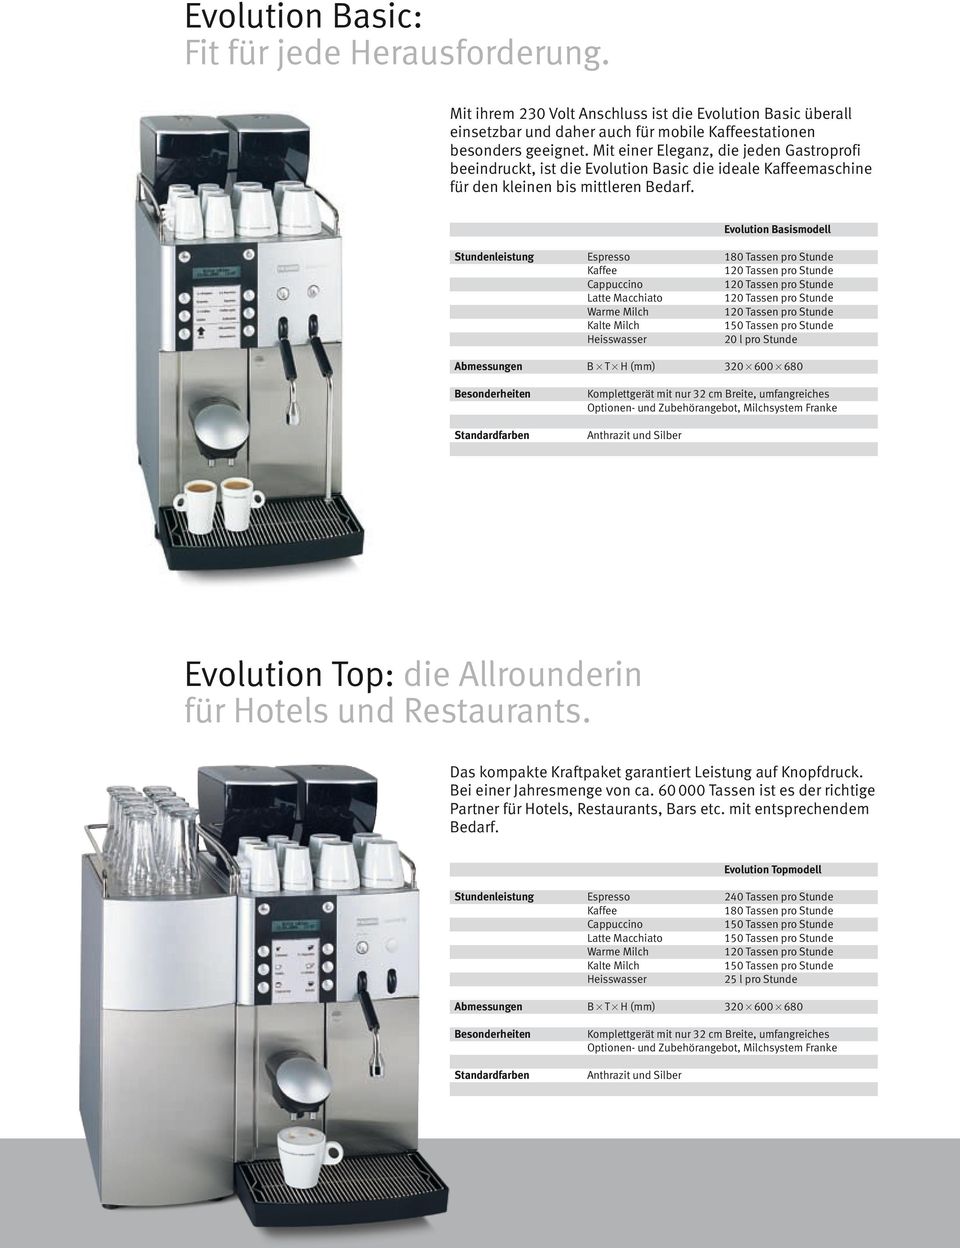 Evolution Basismodell Stundenleistung Espresso Kaffee Cappuccino Latte Macchiato Warme Milch Kalte Milch Heisswasser 20 l pro Stunde Abmessungen B 3 T 3 H (mm) 320 3 600 3 680 Komplettgerät mit nur